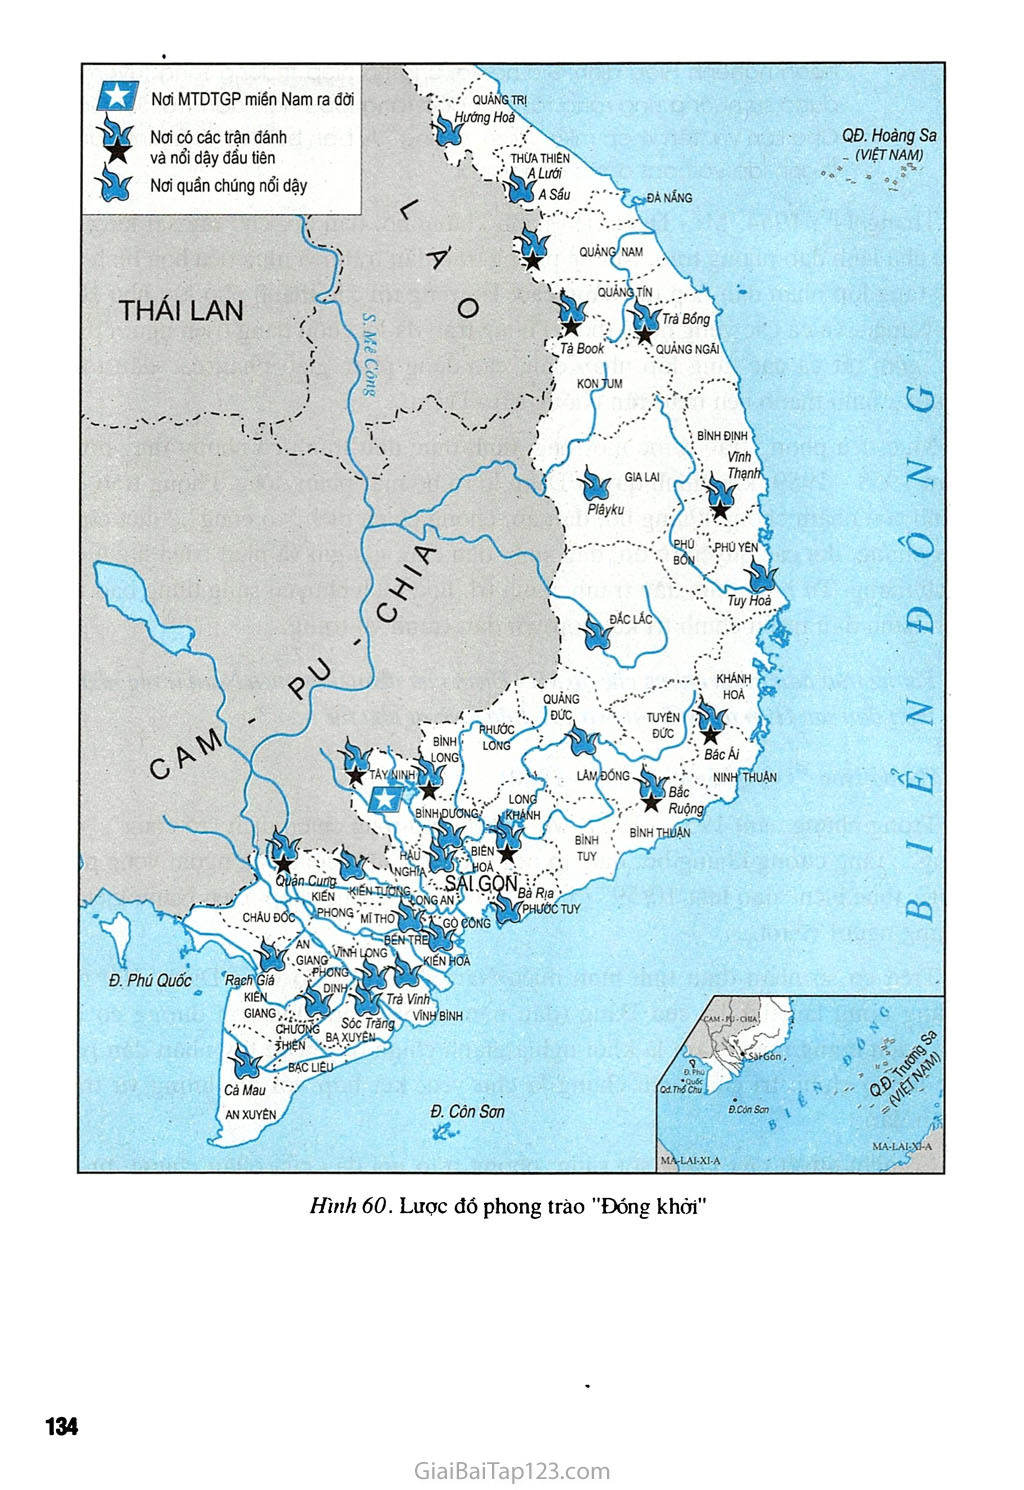 Bài 28 - Xây dựng chủ nghĩa xã hội ở miền Bắc, đấu tranh chống đế quốc Mĩ và chính quyền Sài Gòn ở miền Nam (1954 - 1965) trang 7